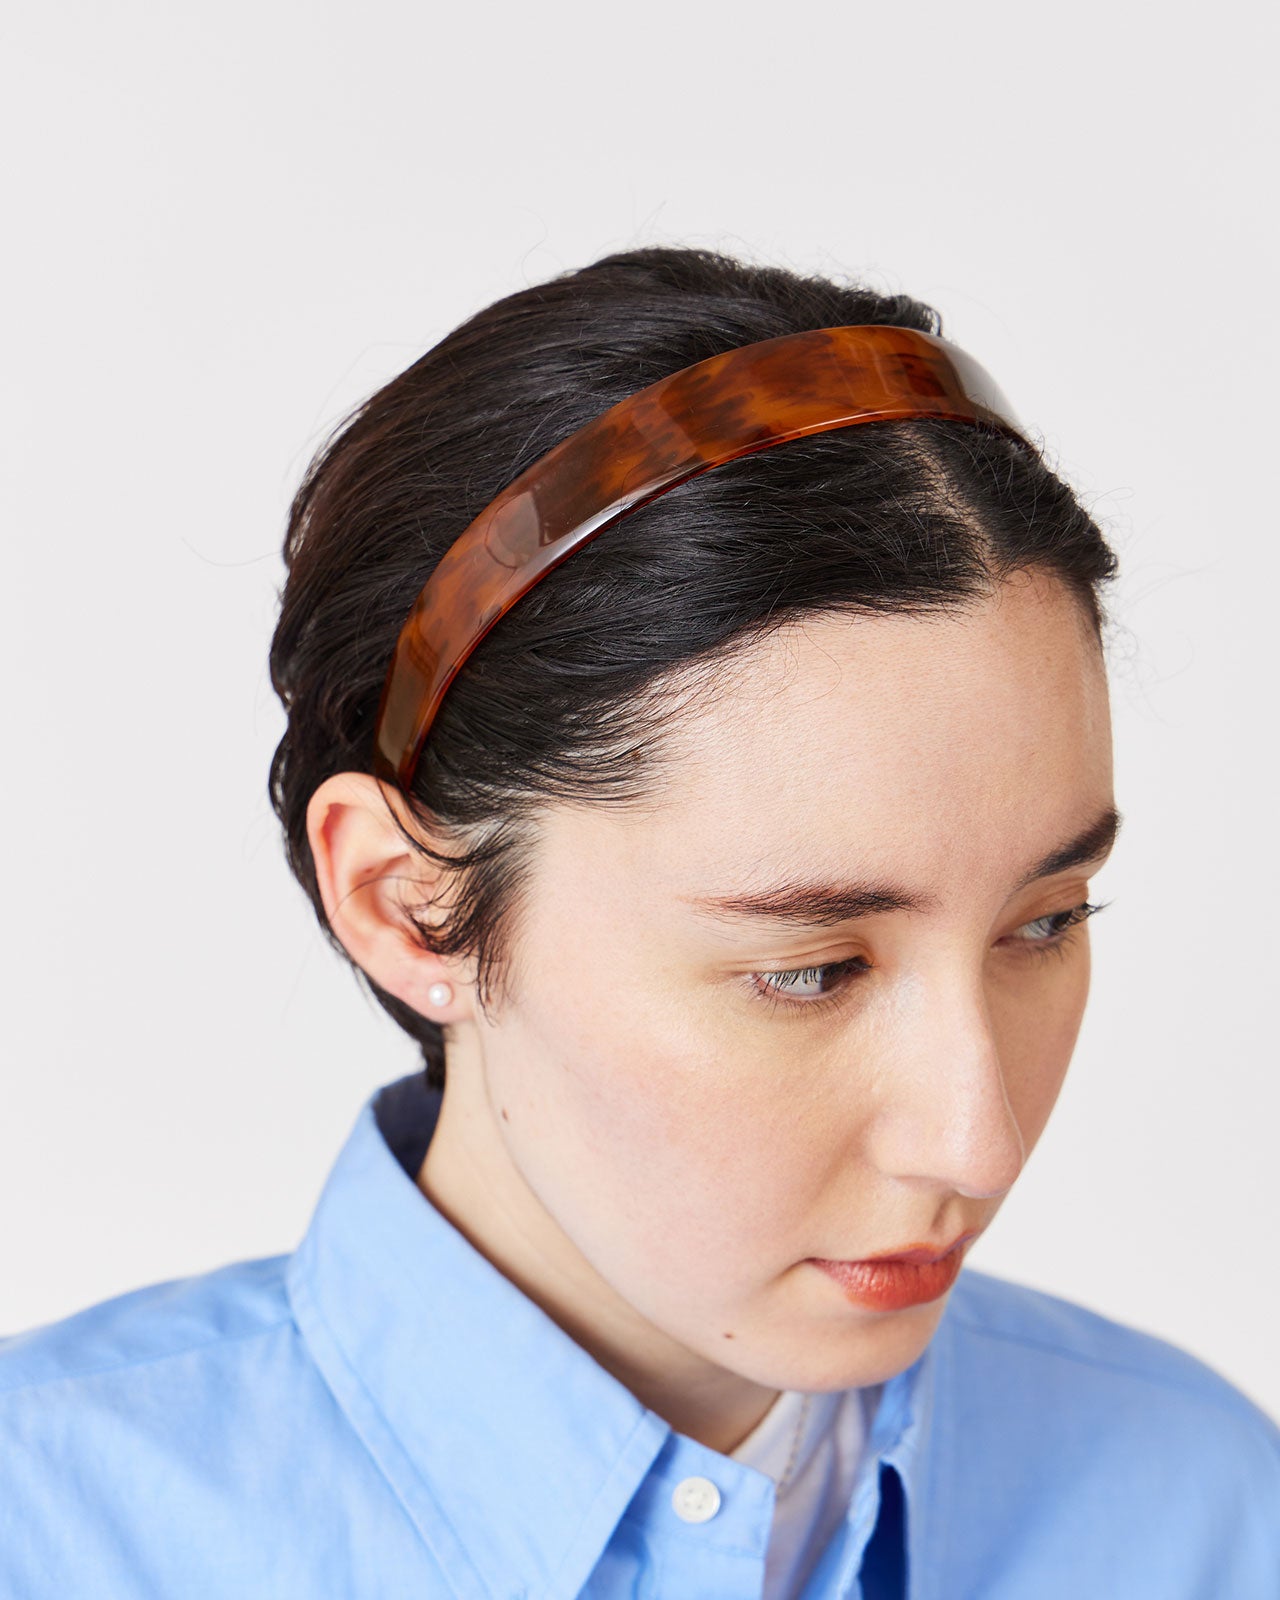 IRIS47 Torotoiseshell headband – Shinzone